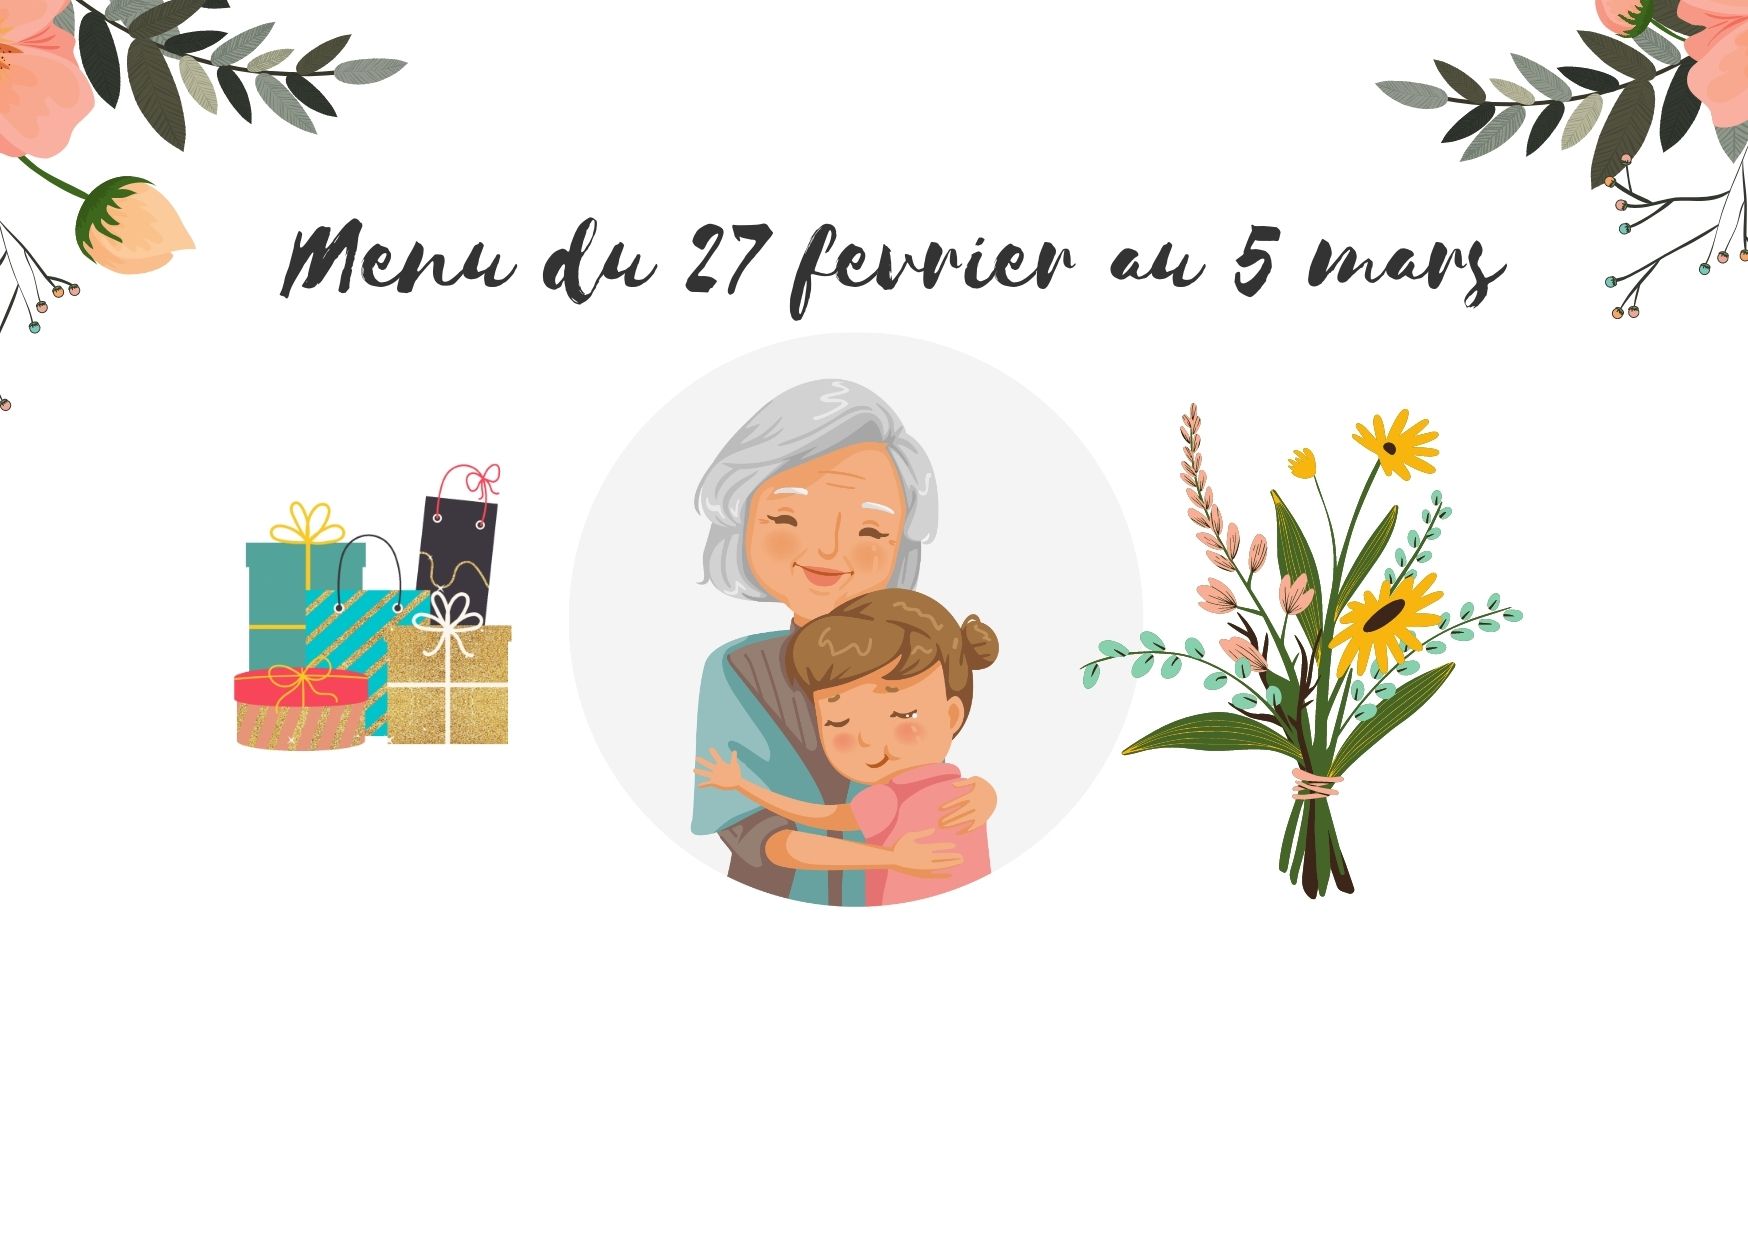 Menu dédié au grand mère by Les Menus services